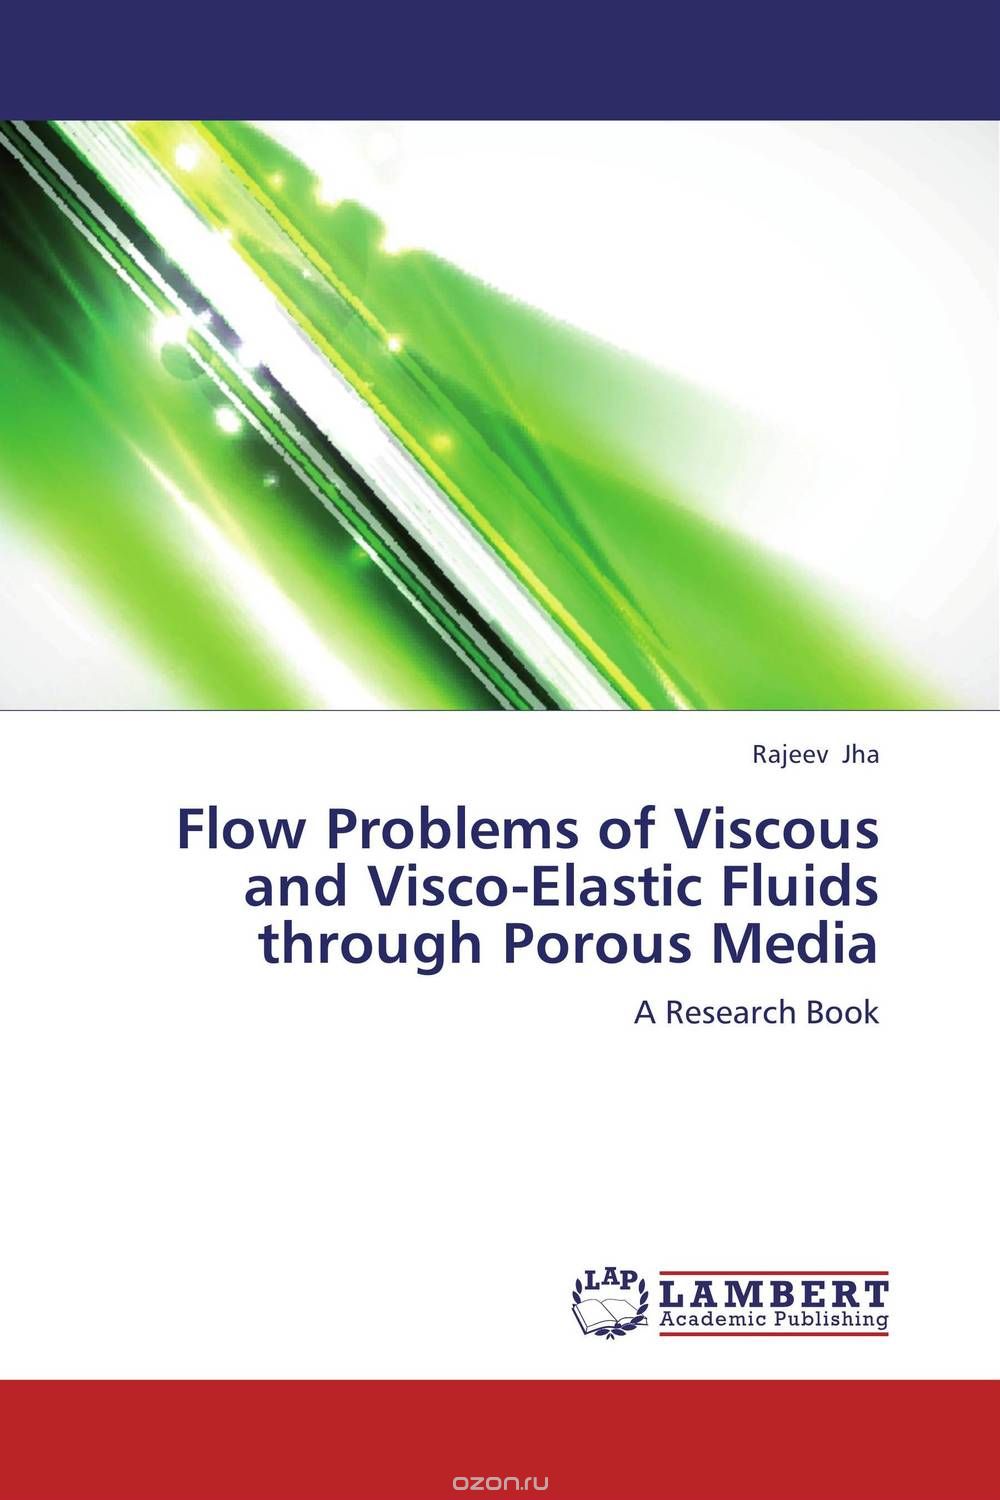 Скачать книгу "Flow Problems of Viscous and Visco-Elastic Fluids through Porous Media"